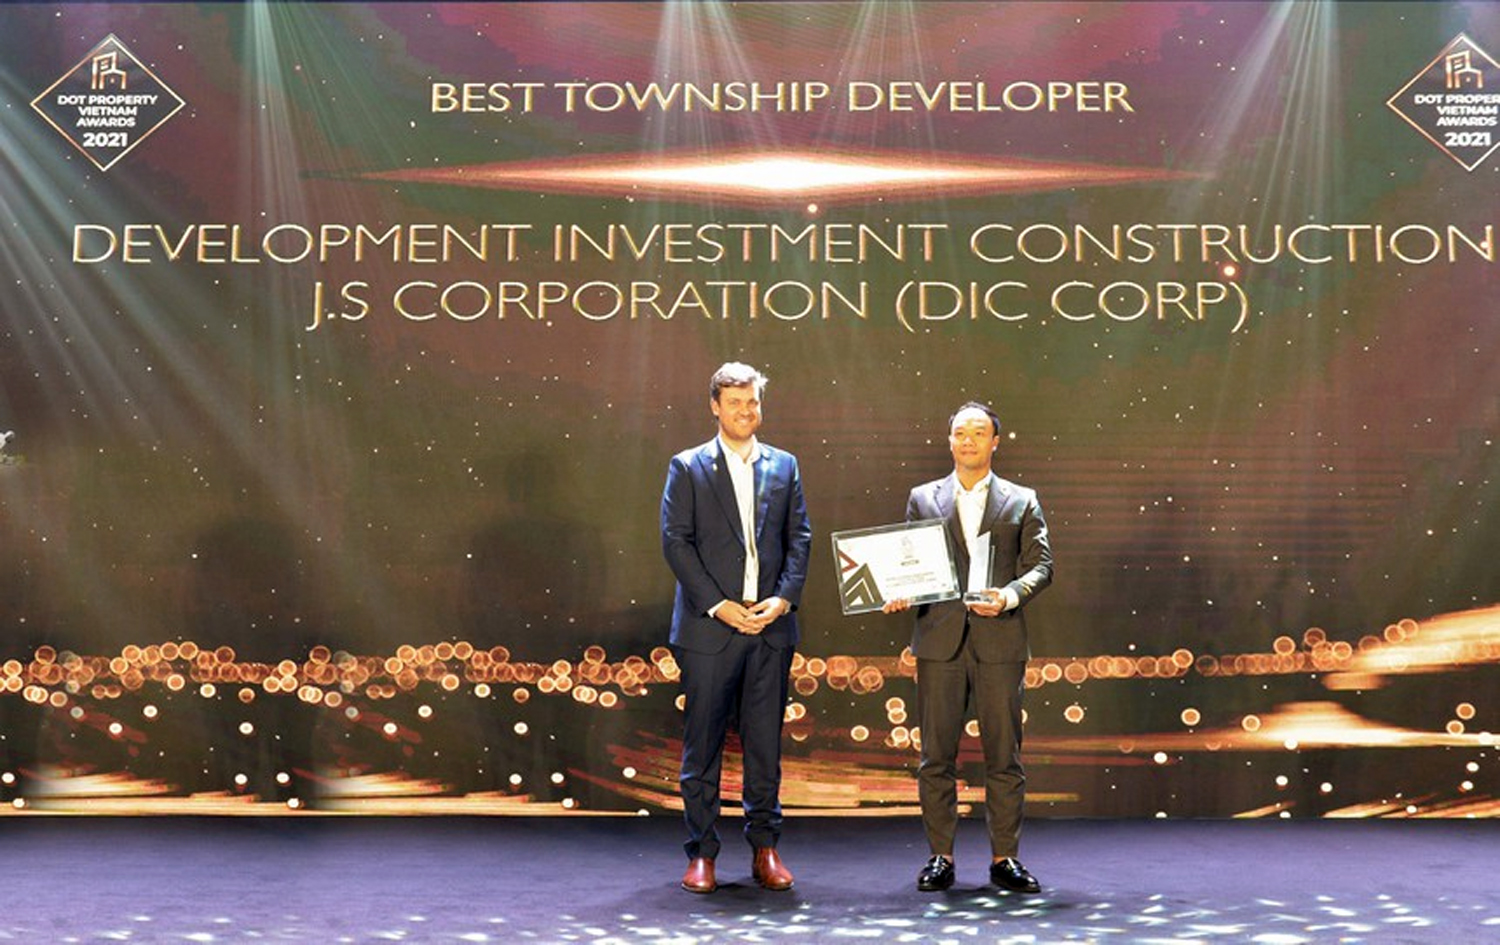 Đại diện DIC Corp nhận giải thưởng “Nhà phát triển đô thị xuất sắc  nhất 2021”.